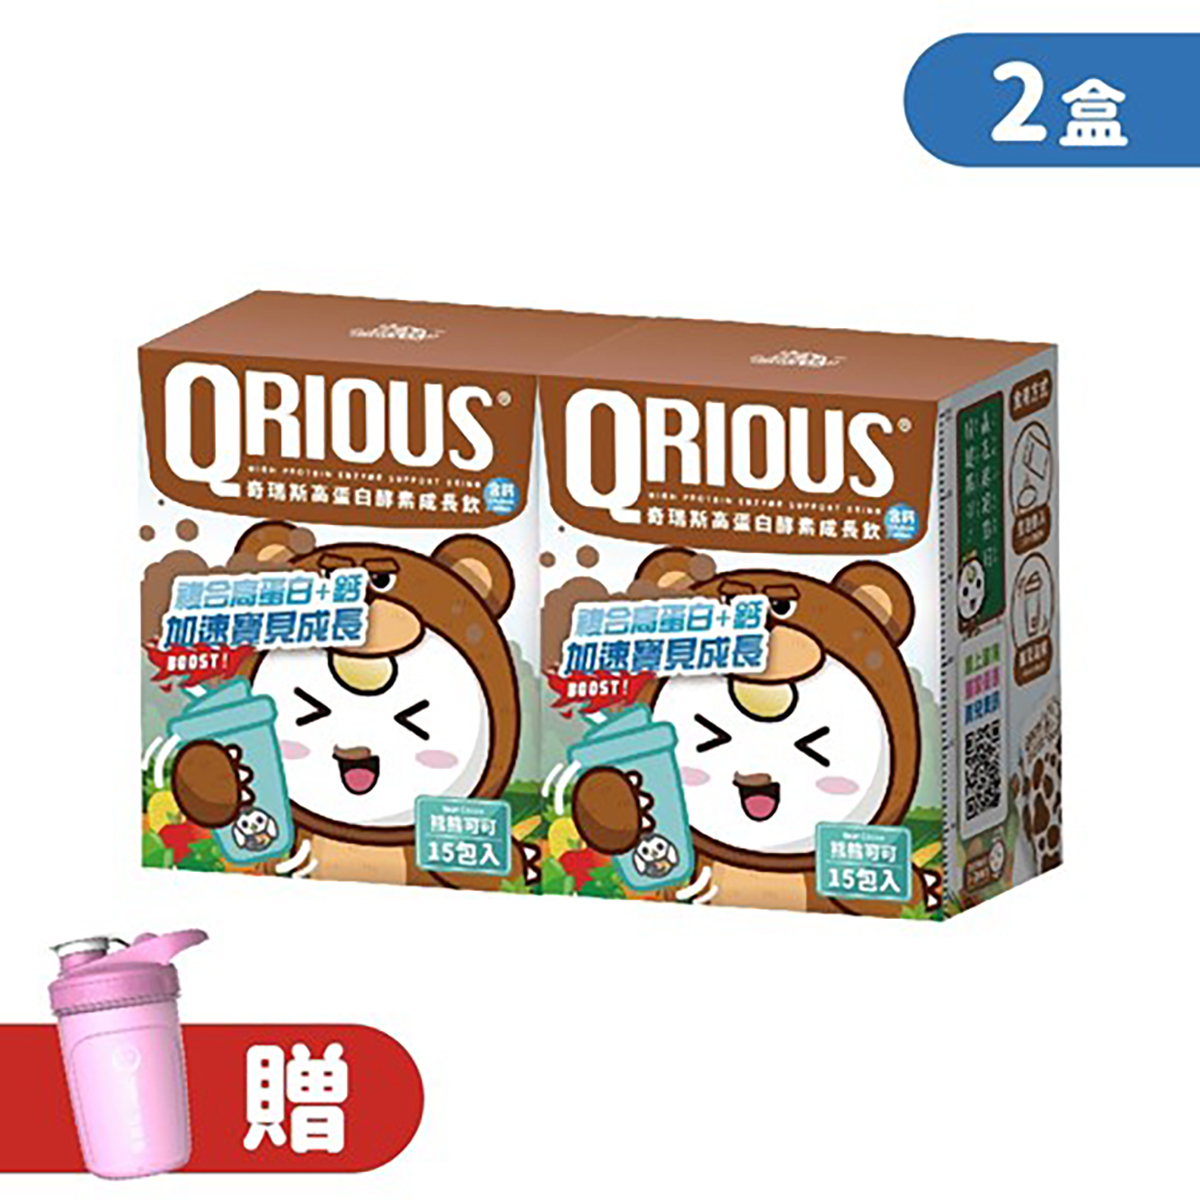 【生長發育必備】QRIOUS®奇瑞斯複方蛋白+鈣成長飲-熊熊可可(2盒)贈小Ｑ雪克杯(1入)